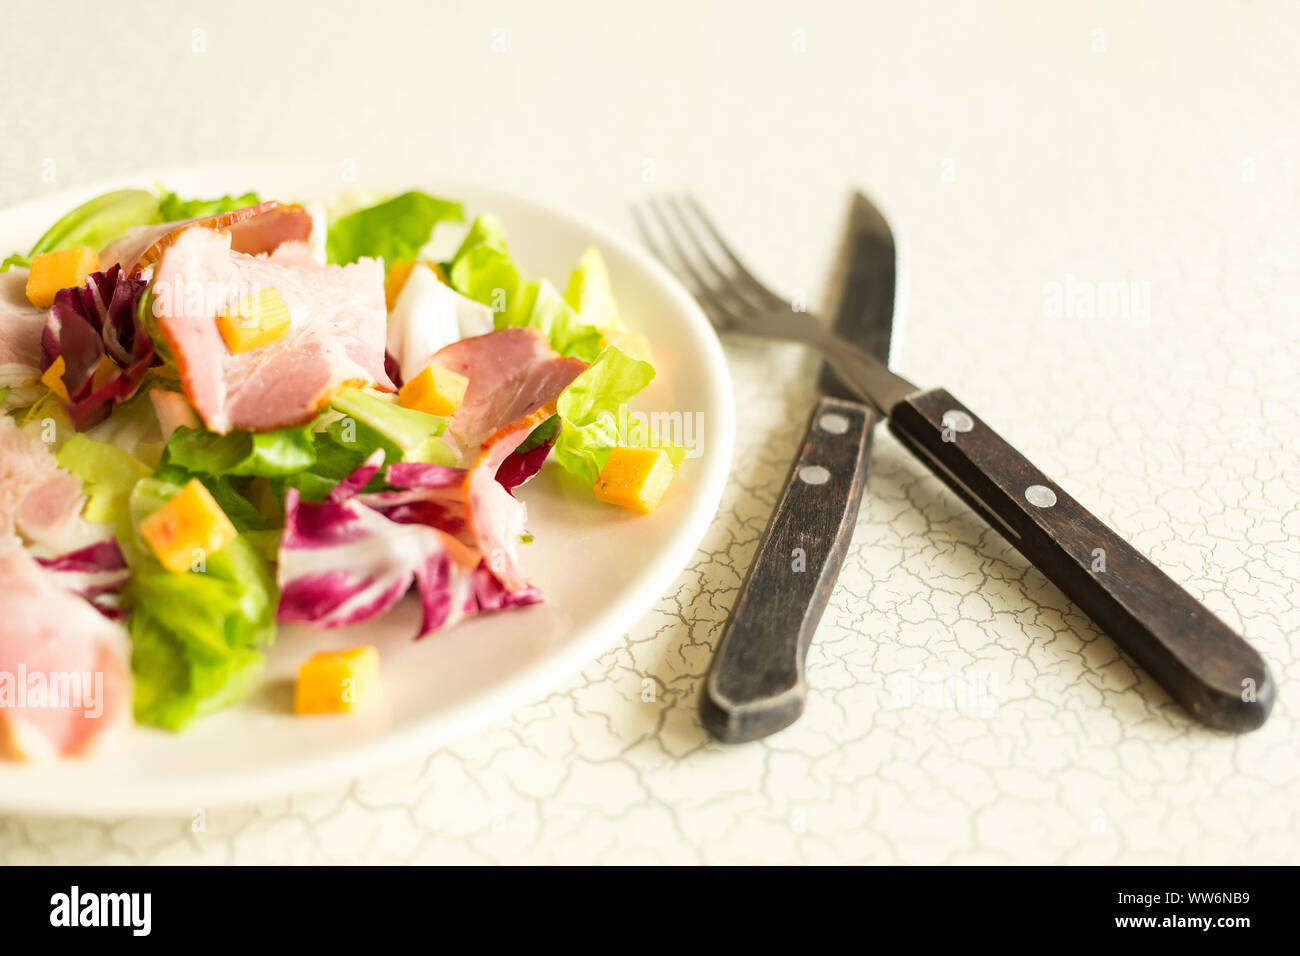 Un piatto di insalata di foglie verdi, prosciutto e formaggio. Posate e un piatto di insalata fresca. Il pranzo. La colazione è intercontinentale presso l'hotel. Foto Stock